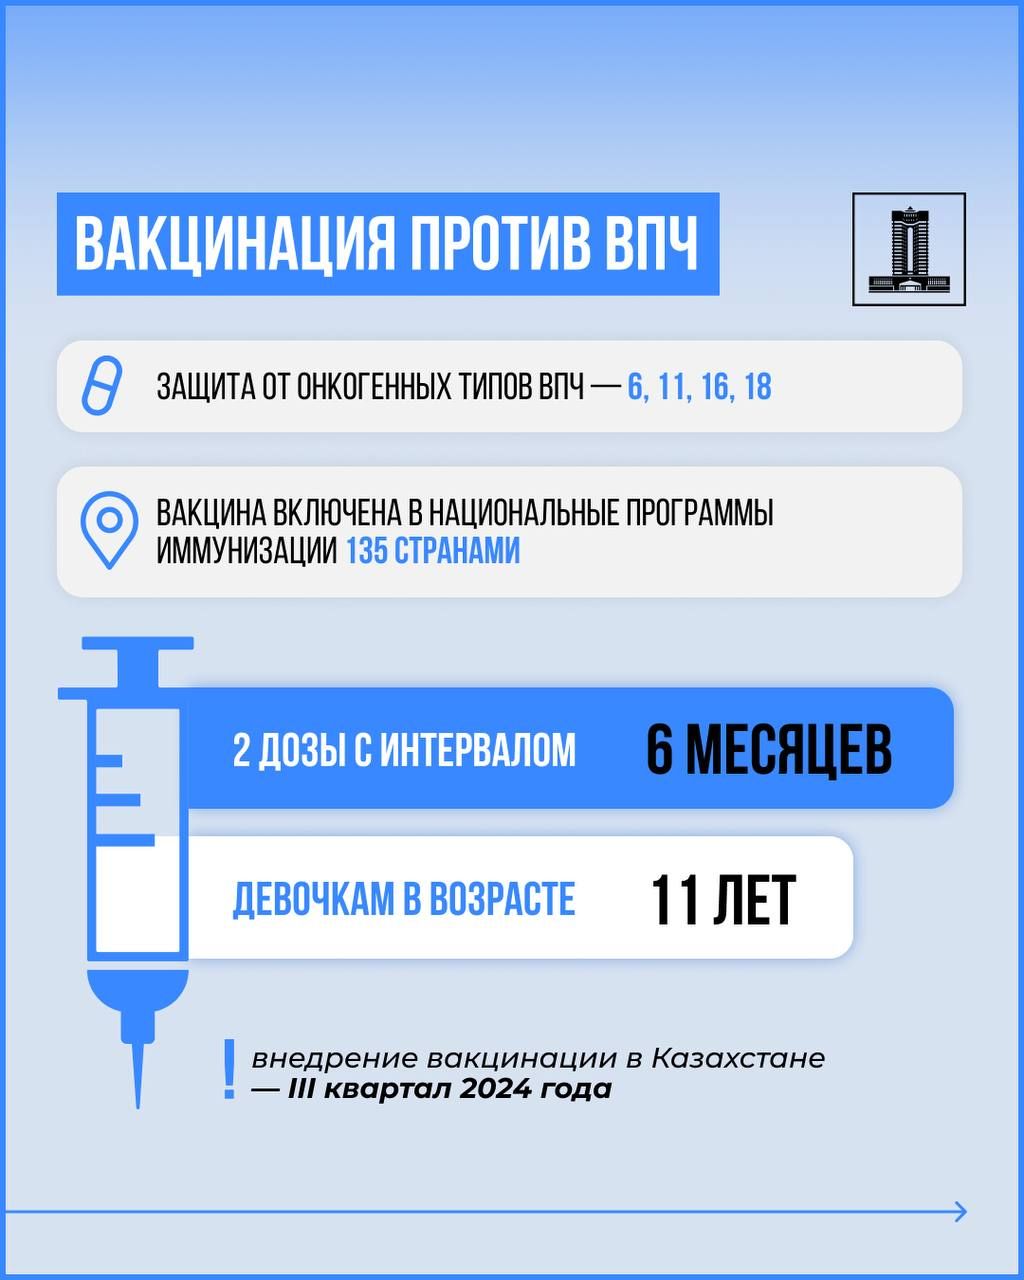 Свыше 9,7 млрд тенге выделило правительство на закуп вакцины против ВПЧ   3024427 — Kapital.kz 